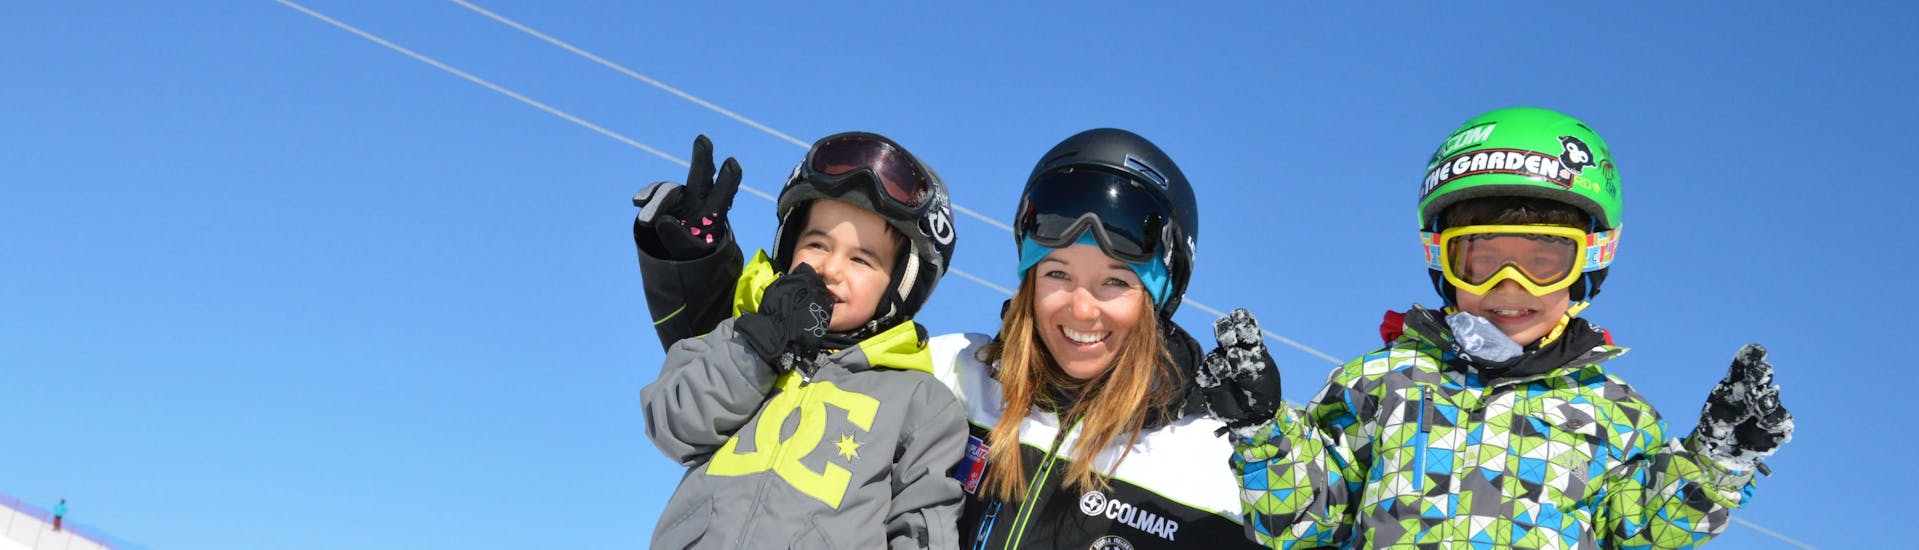 Zwei glückliche Kinder beim Kinder-Snowboardkurs für Fortgeschrittene mit der Cimaschool Plan de Corones.